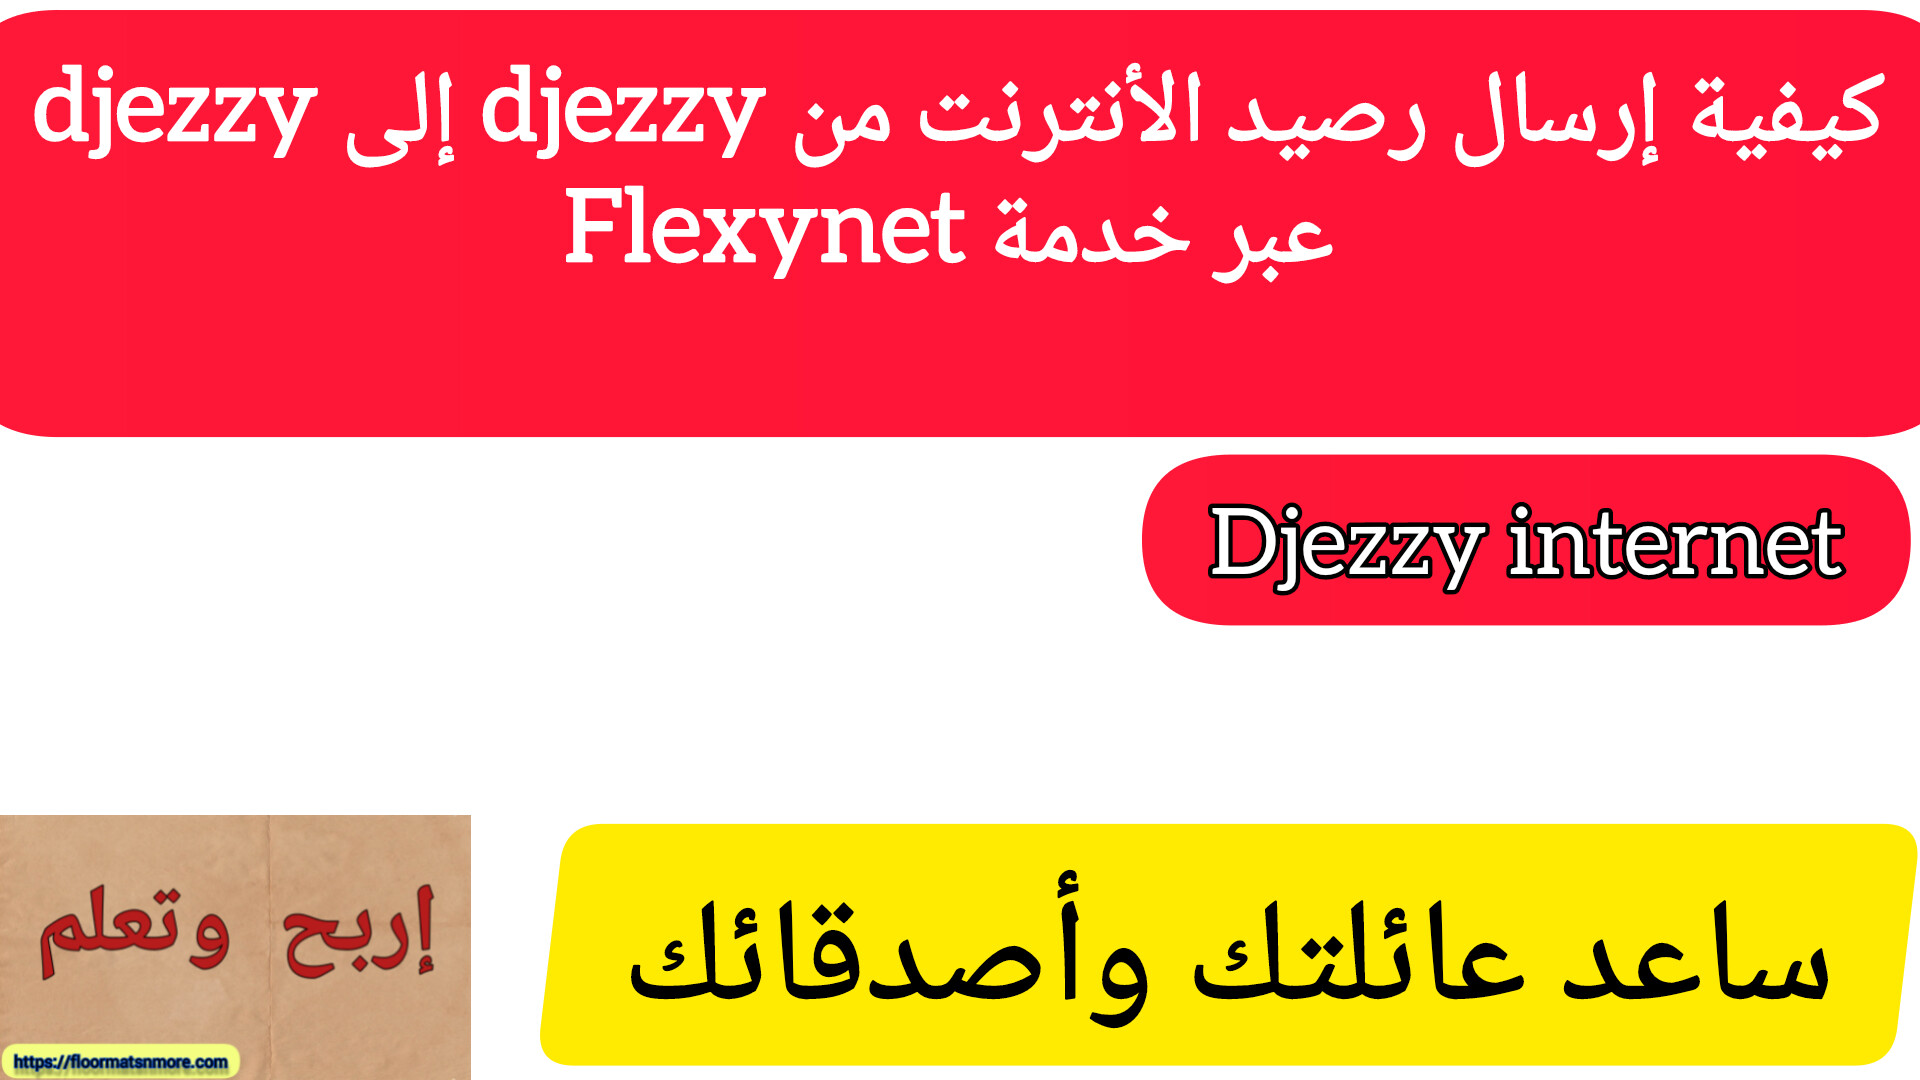 كيفية إرسال رصيد الأنترنت من djezzy إلى djezzy عبر خدمة Flexynet